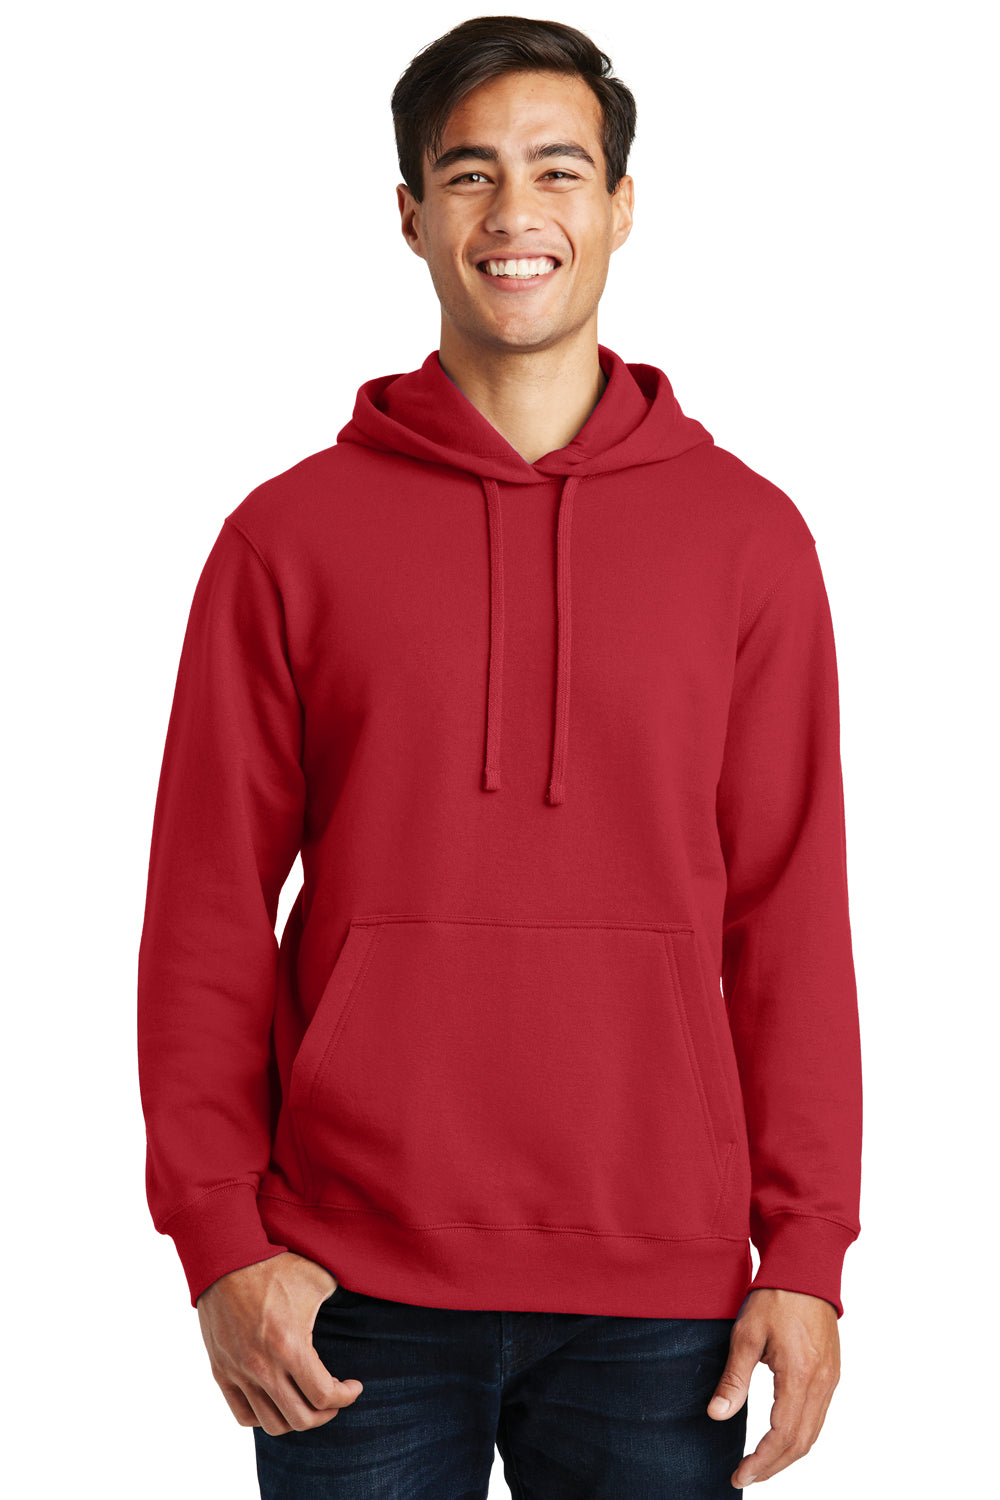 Port & Company PC850H Mens Fan Favorite Fleece Hooded Sweatshirt Hoodie Cardinal Red Front